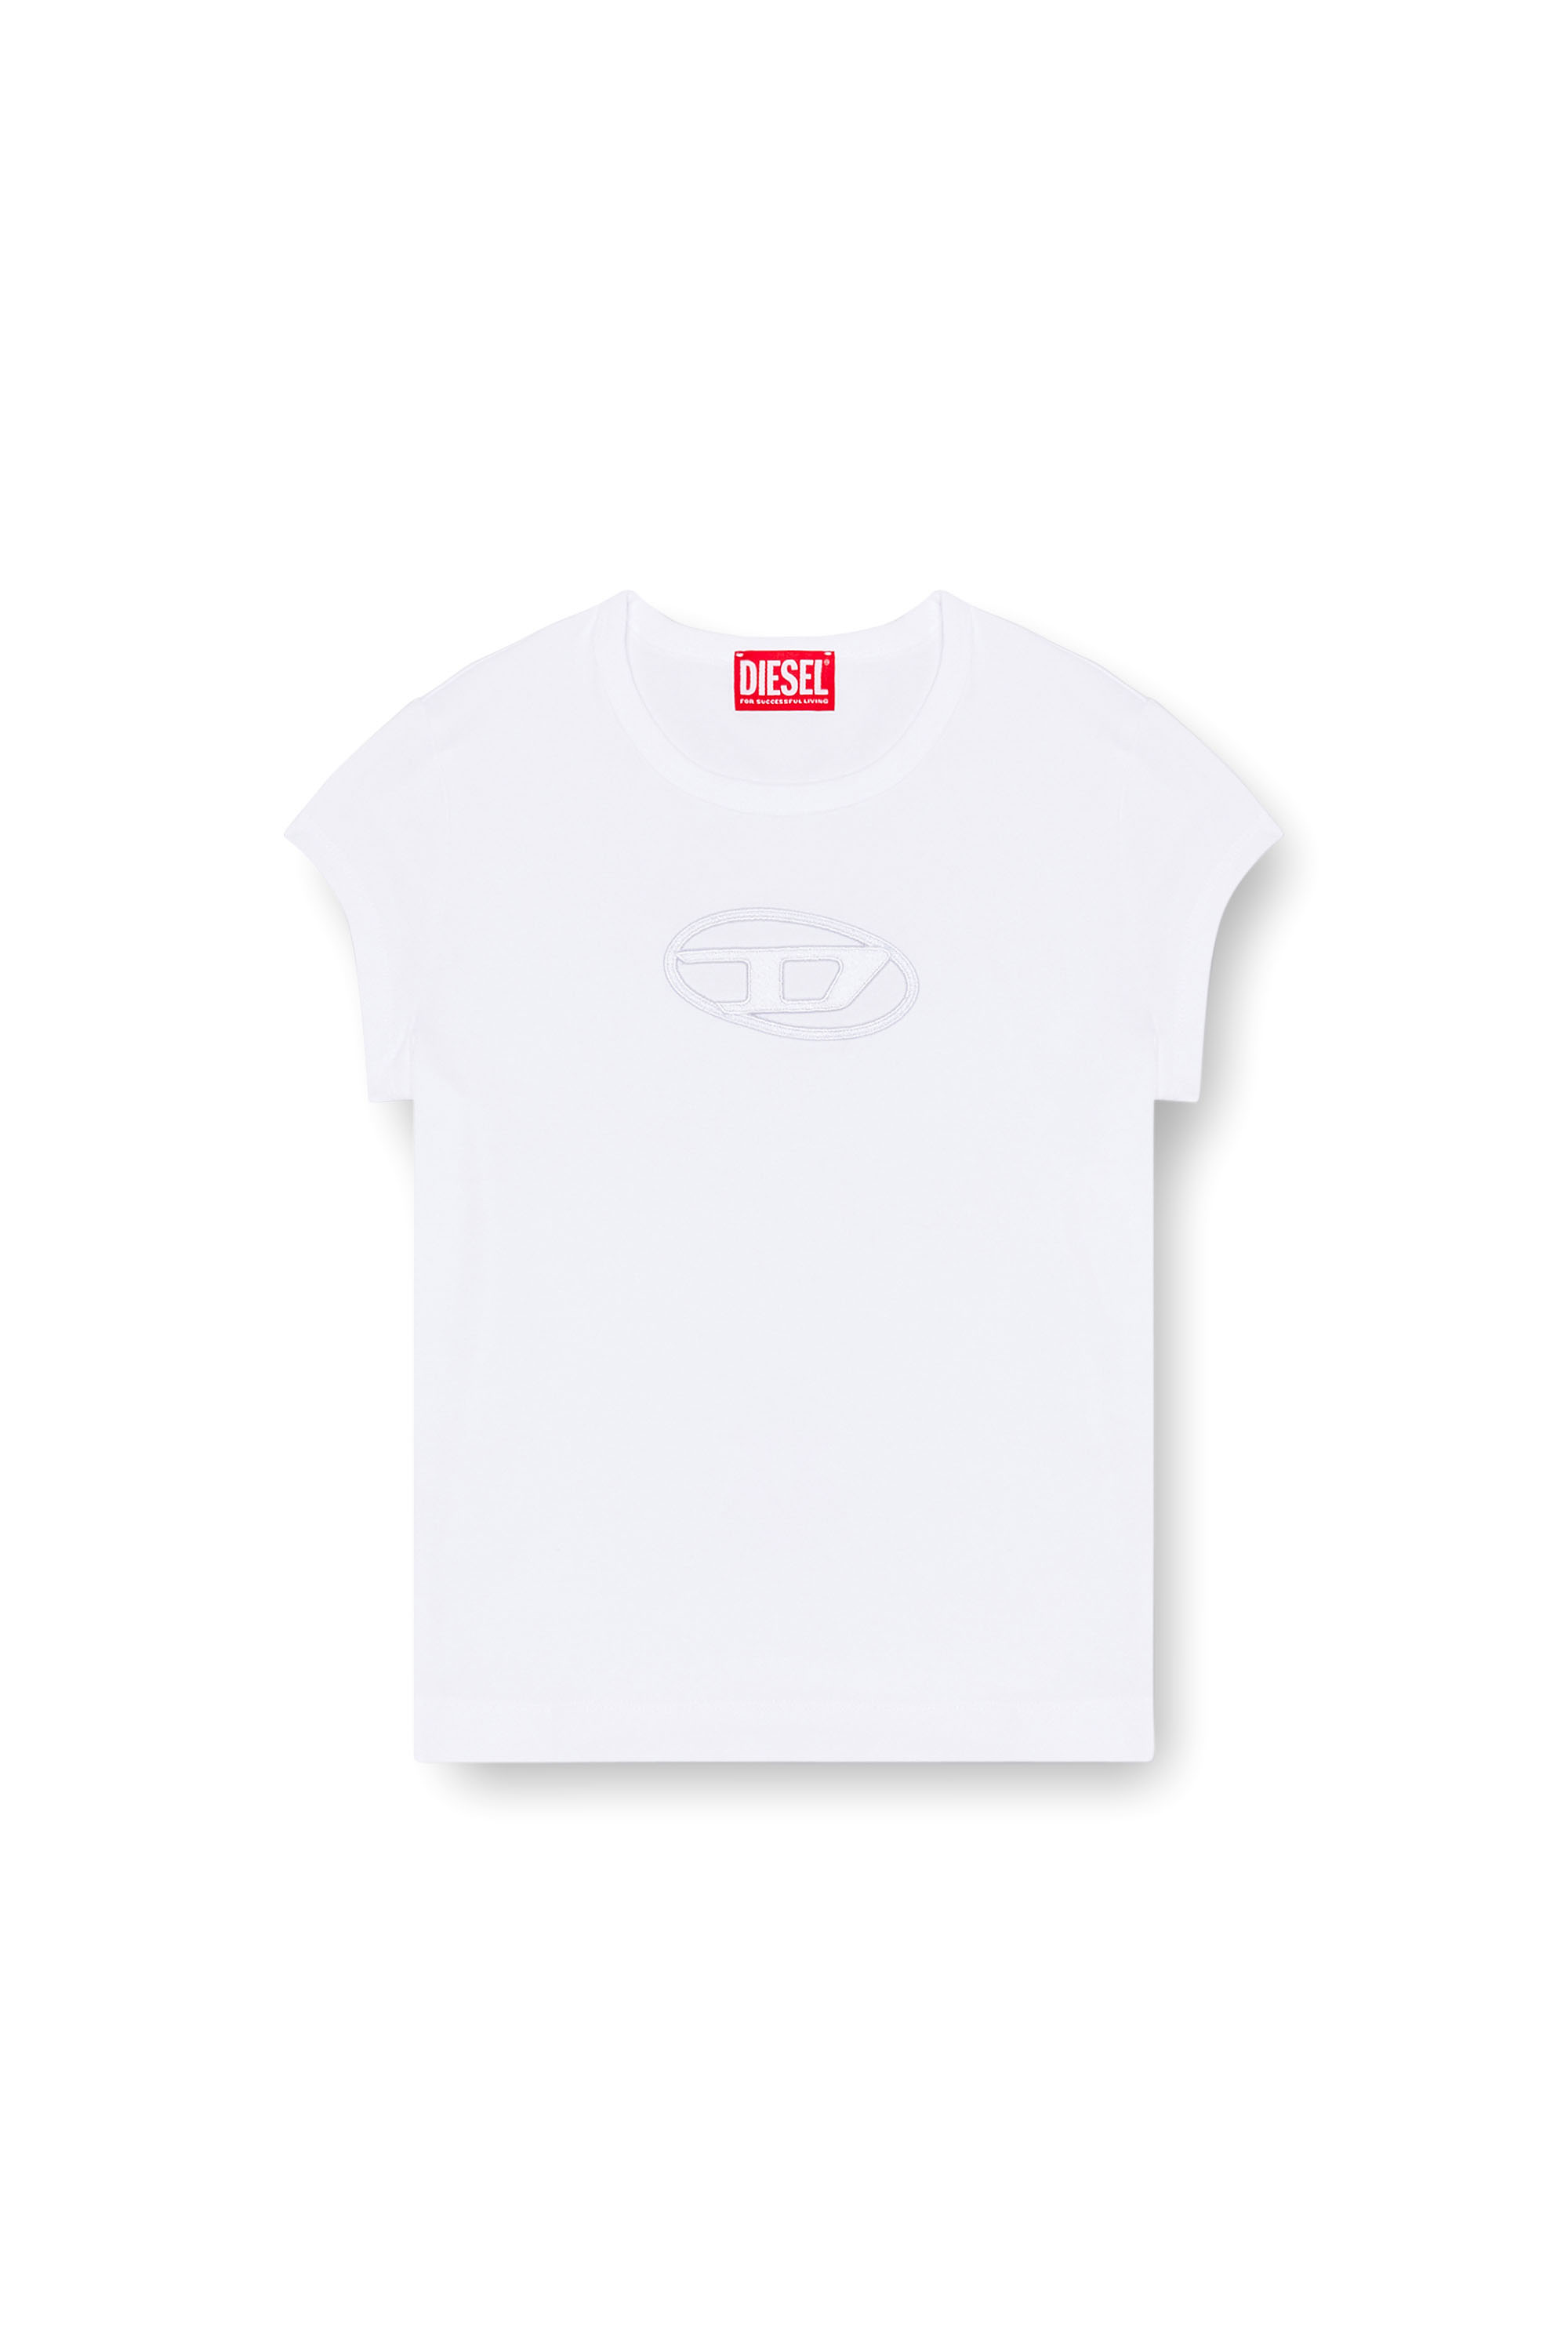 【新品・未使用】DIESEL ディーゼル ロゴ プリント Tシャツ モノグラム